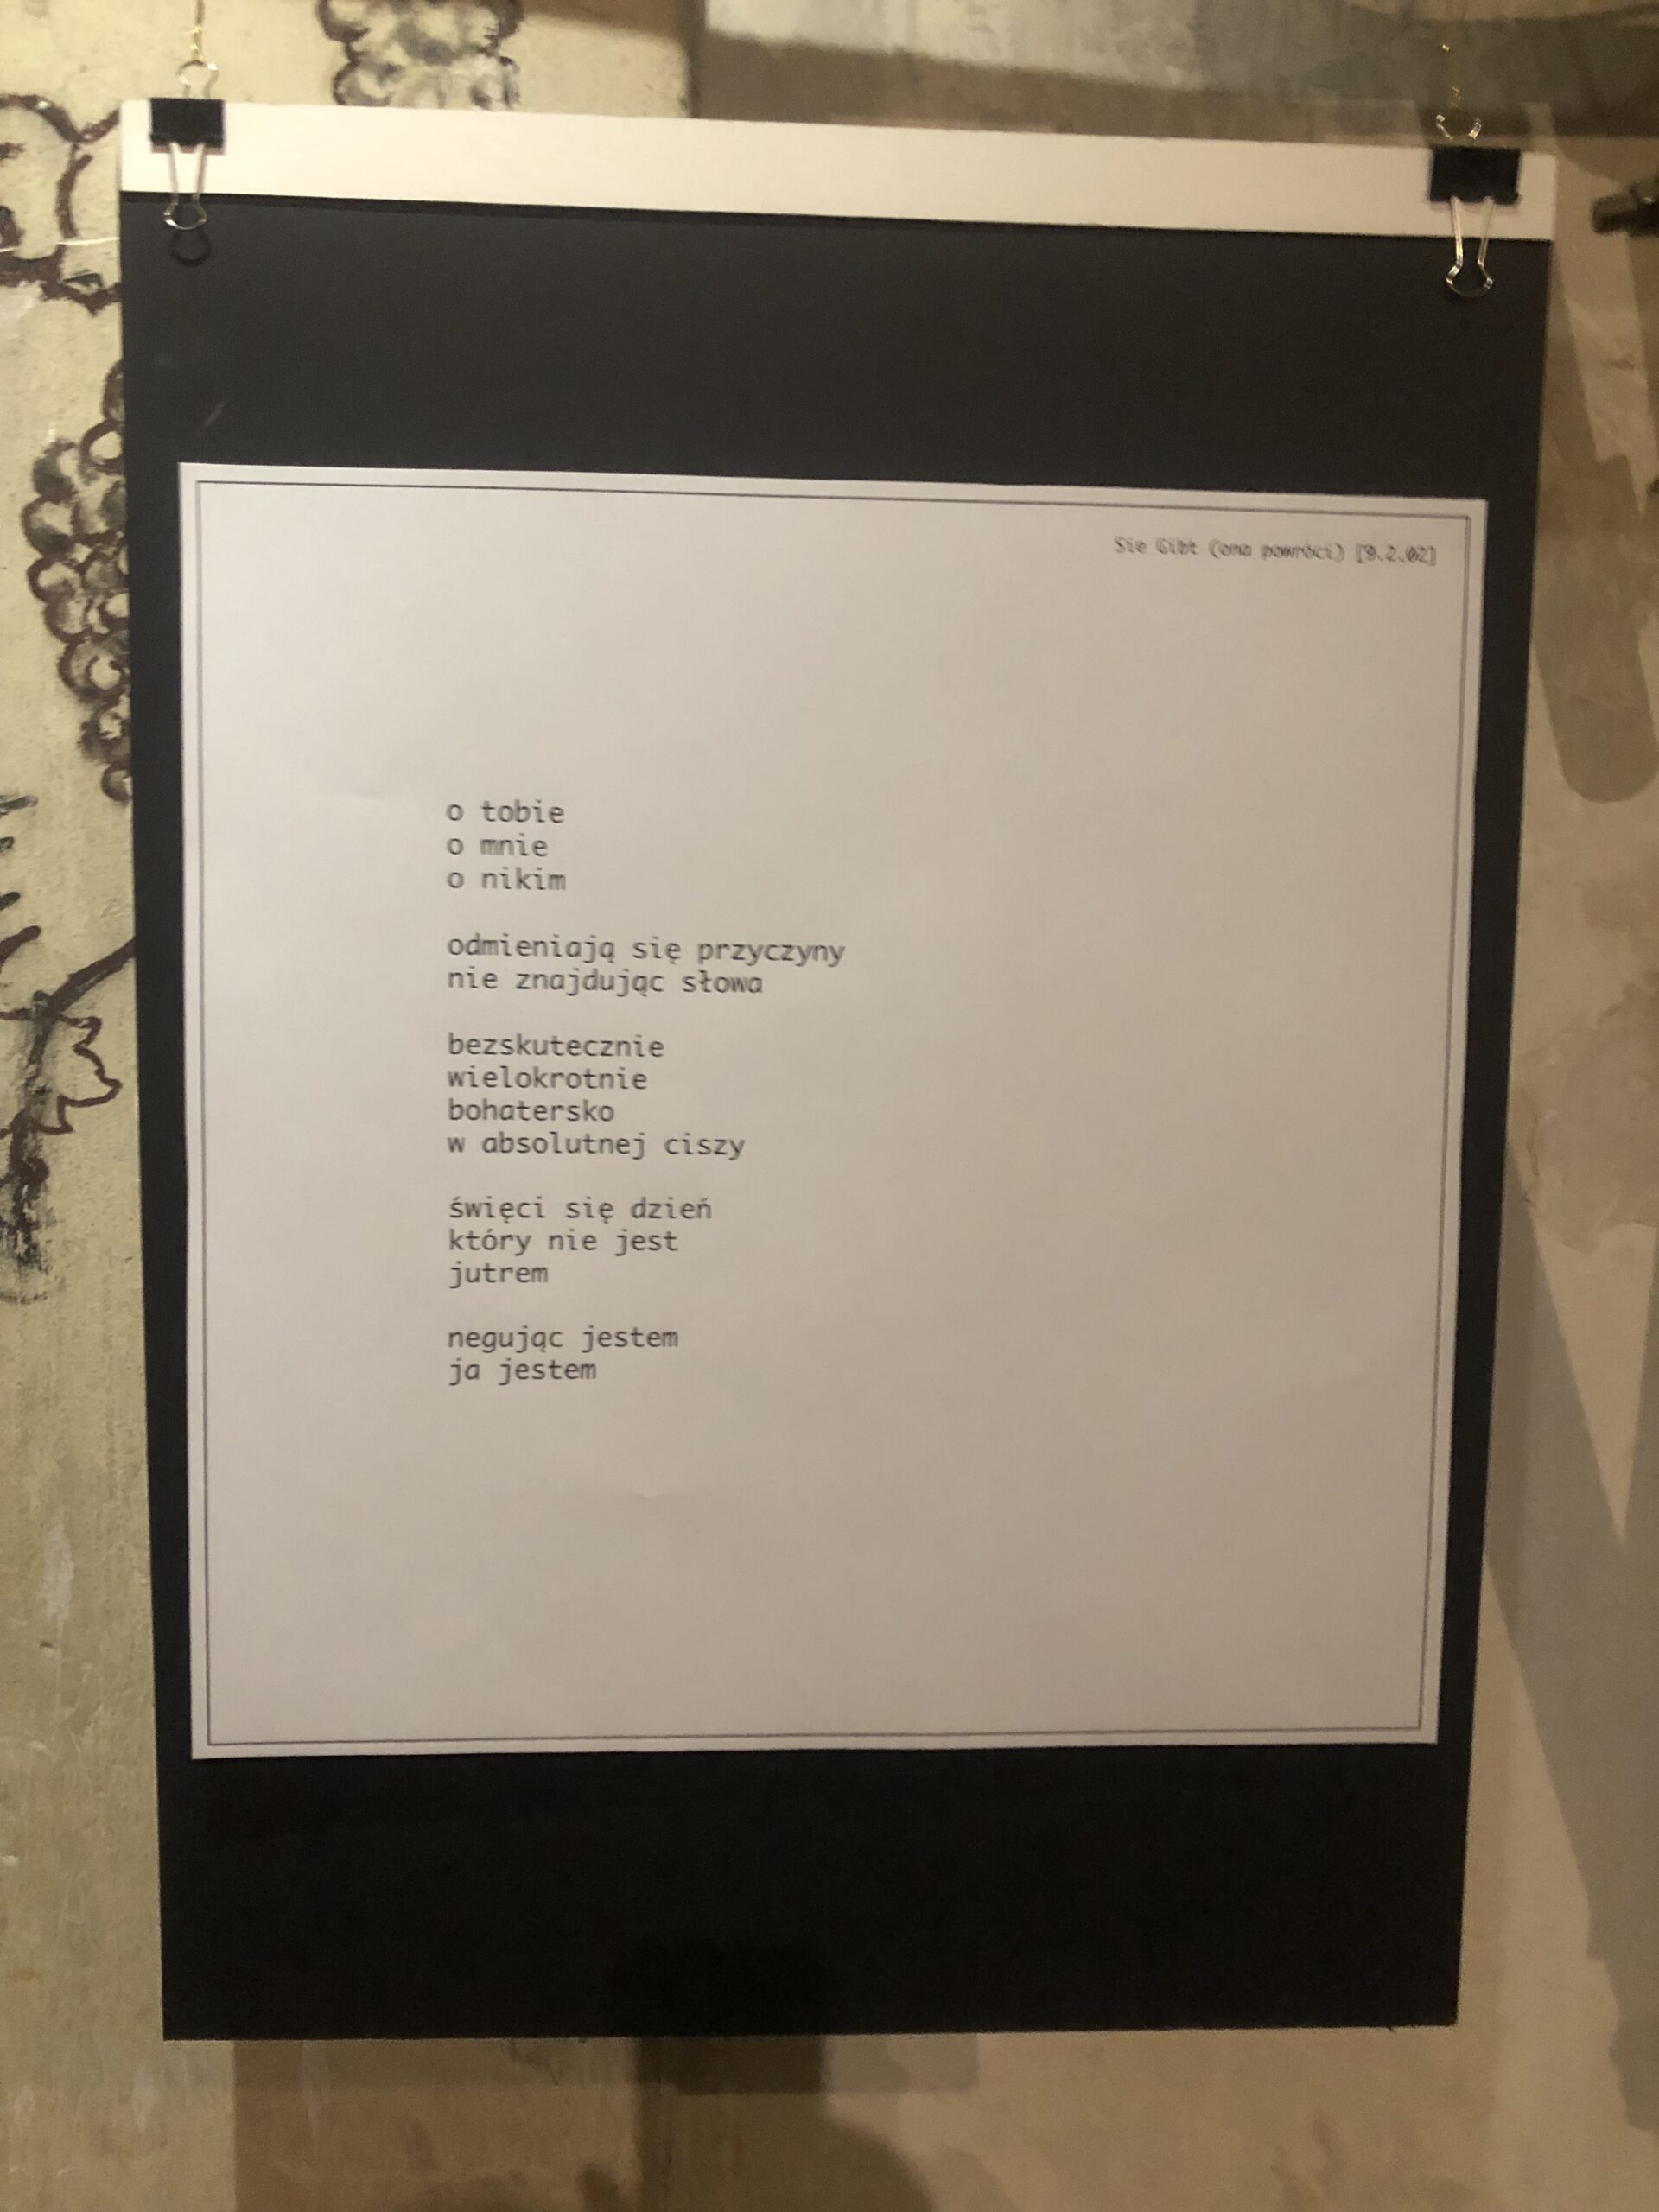 Wiersze z Wystawy (15) ⌖ ❡ [9.2.02](1) ° o nikim